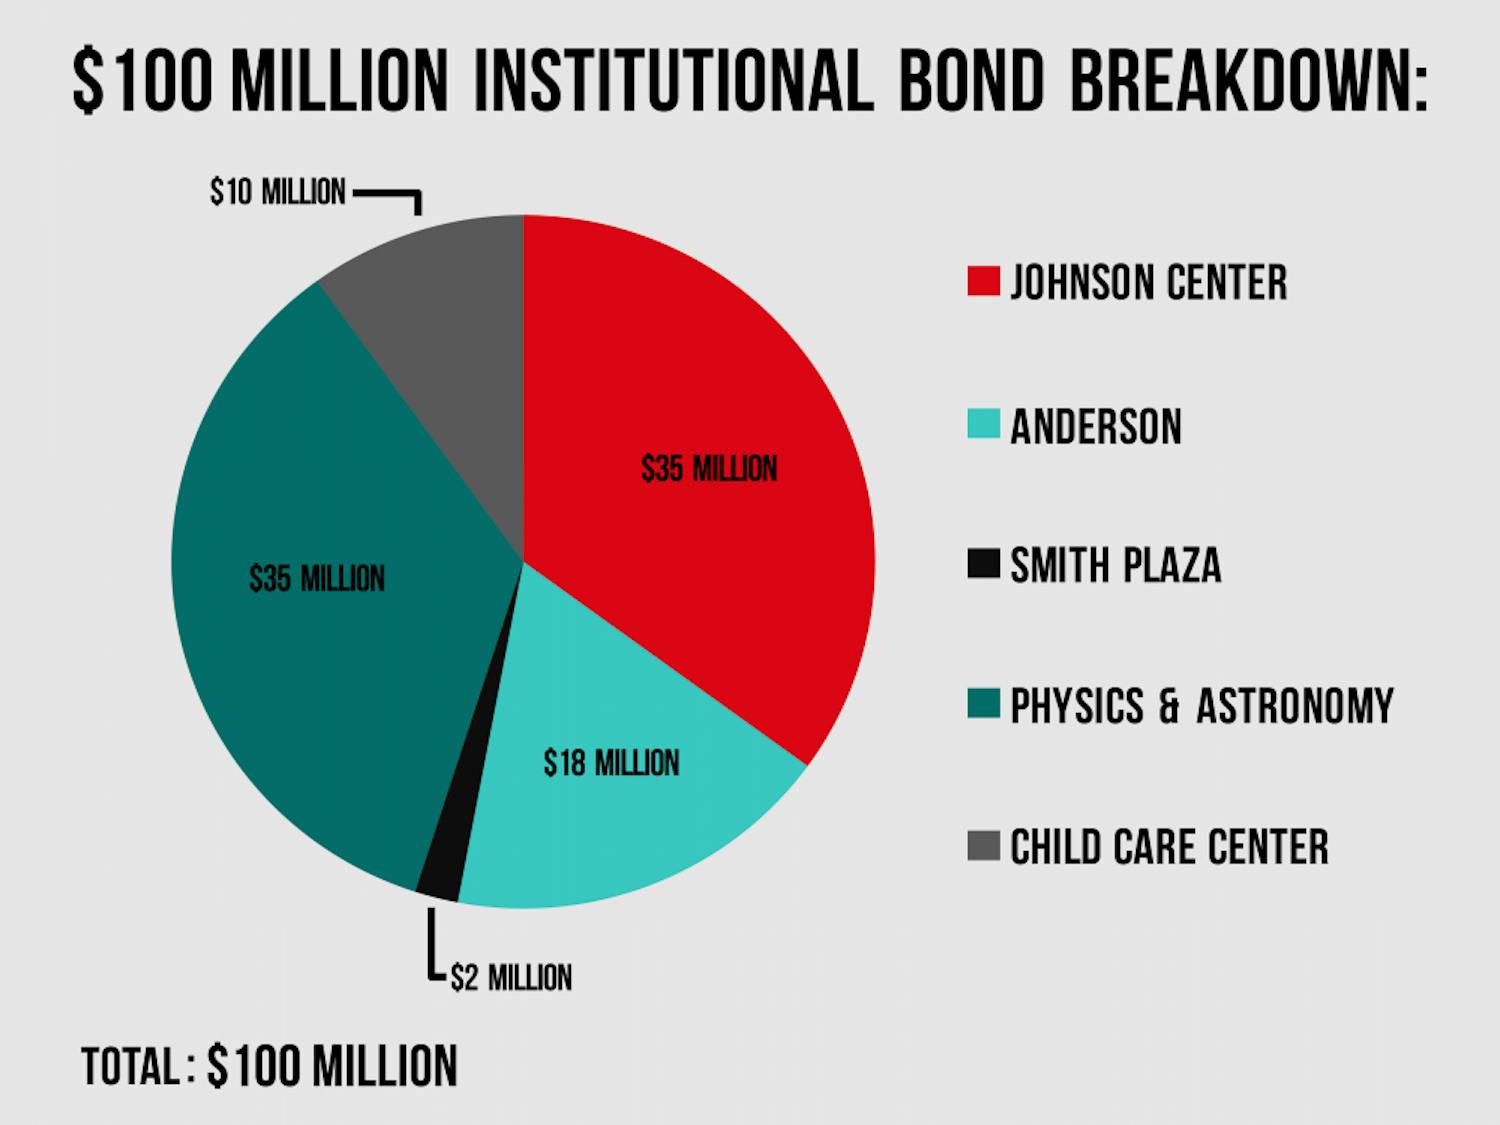 Institutional bonds